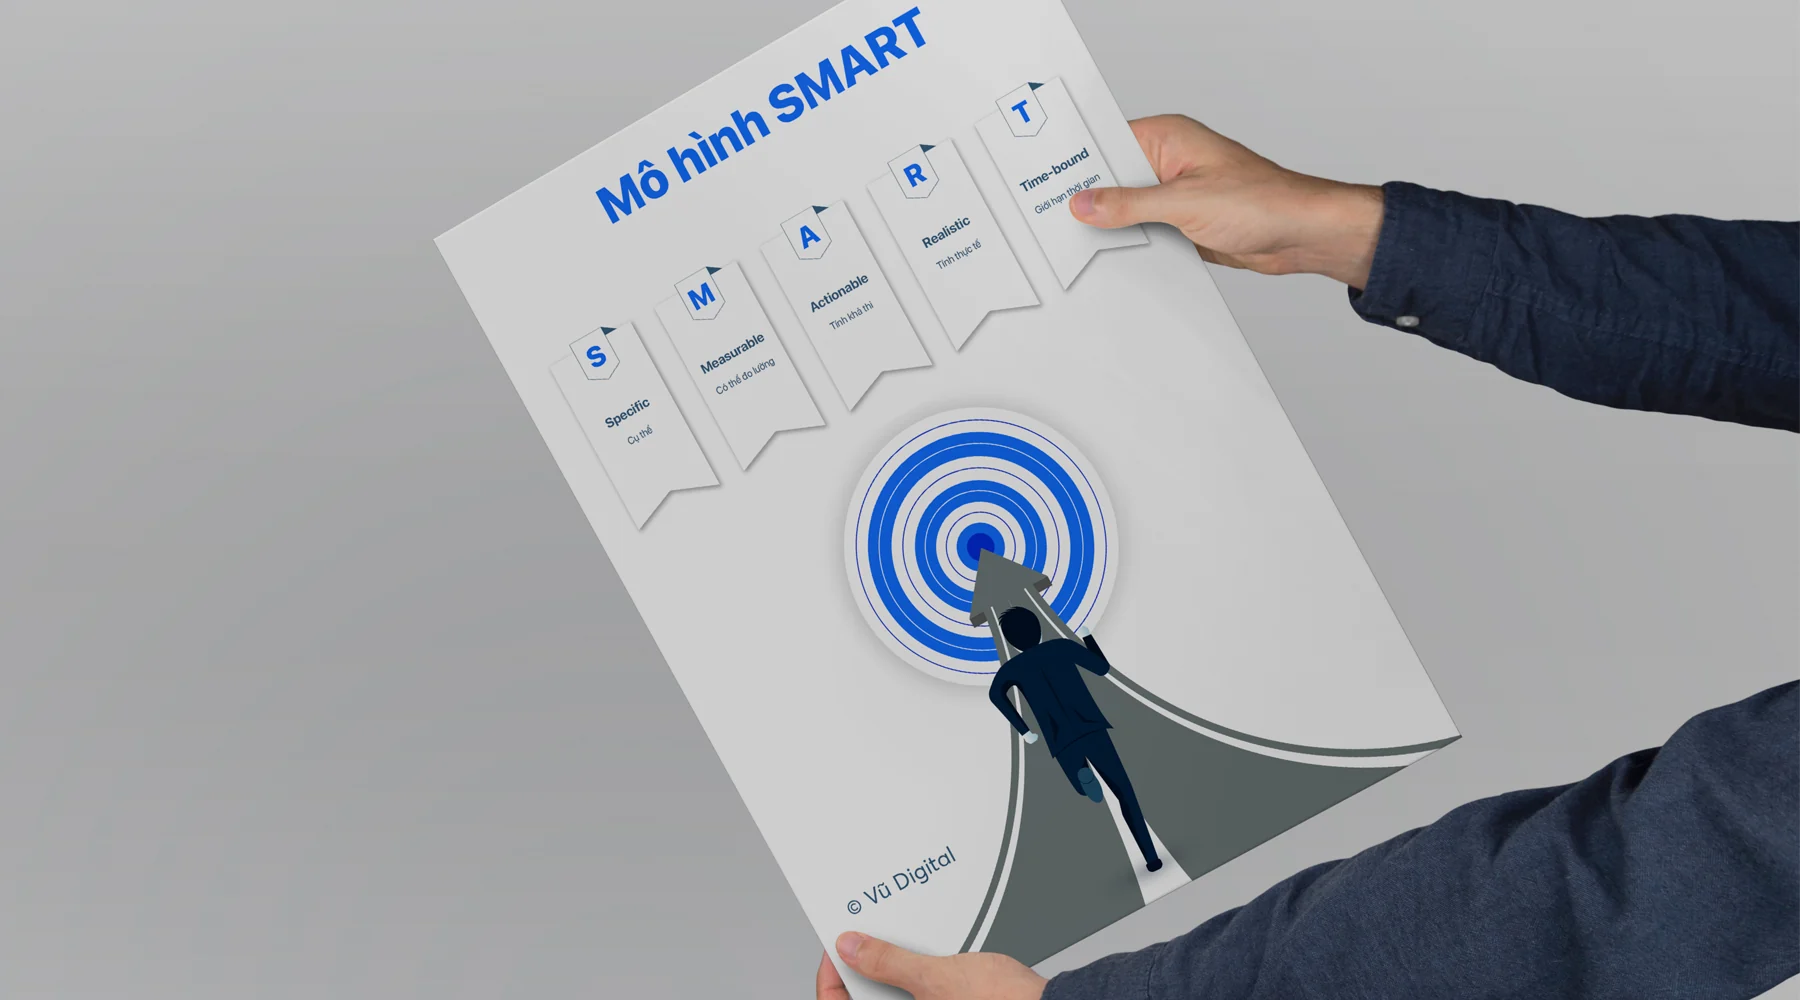 Mô hình SMART là gì? 5 tiêu chí chính trong mô hình xây dựng mục tiêu hiệu  quả - Vũ Digital